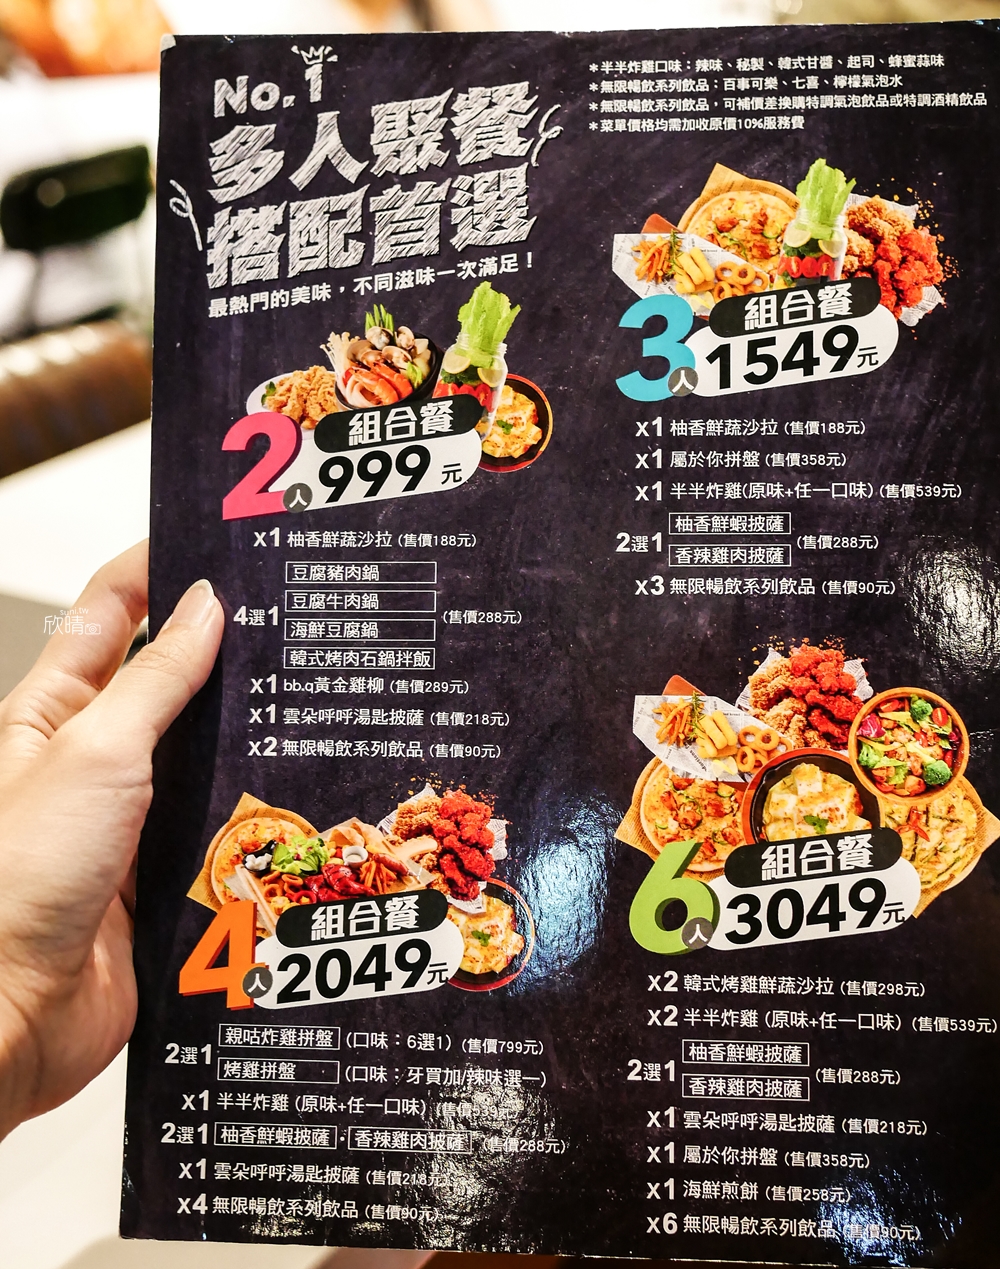 台北韓式炸雞店｜bb.q CHICKEN慶城店。調味半半炸雞~BTS也代言過(菜單menu價錢)